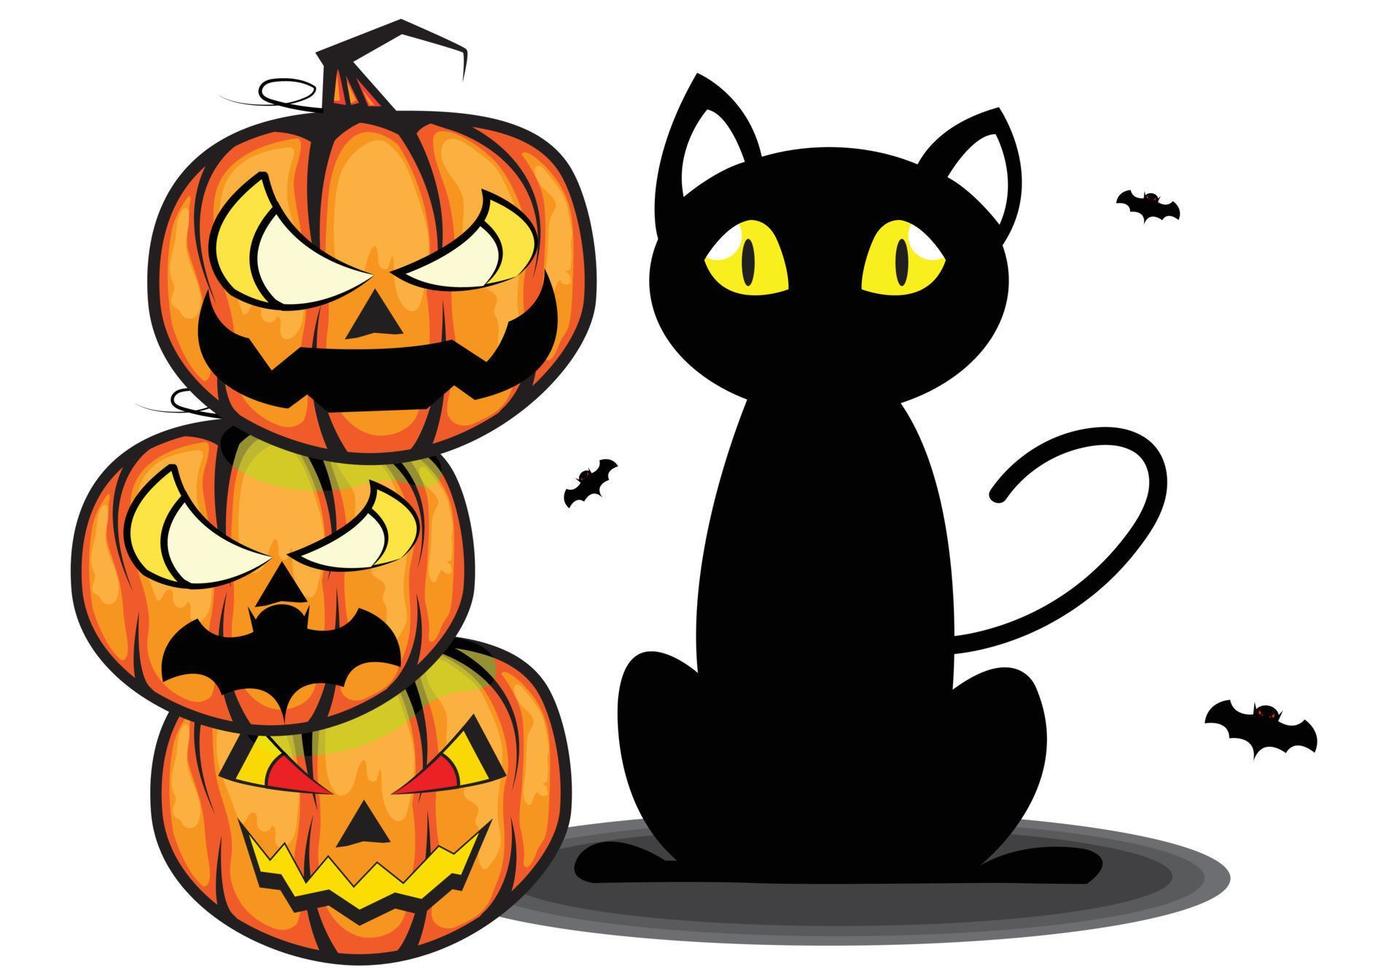 vetor dos desenhos animados 3 cabeças empilhadas da abóbora do diabo do Dia das Bruxas ao lado de um gato preto.